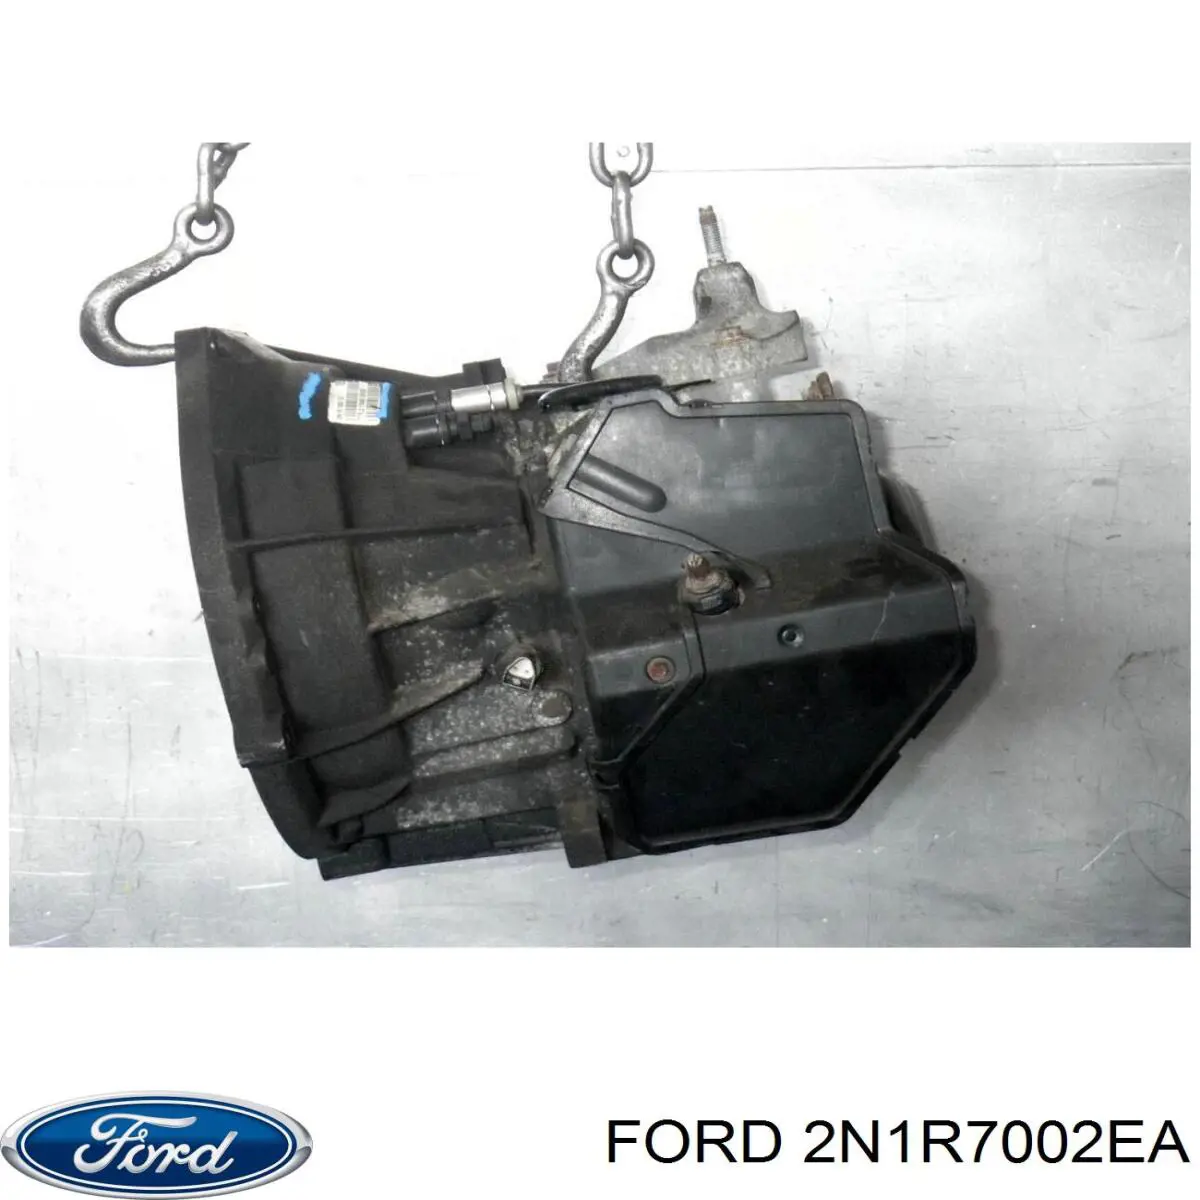 1142481 Ford caixa de mudança montada (caixa mecânica de velocidades)